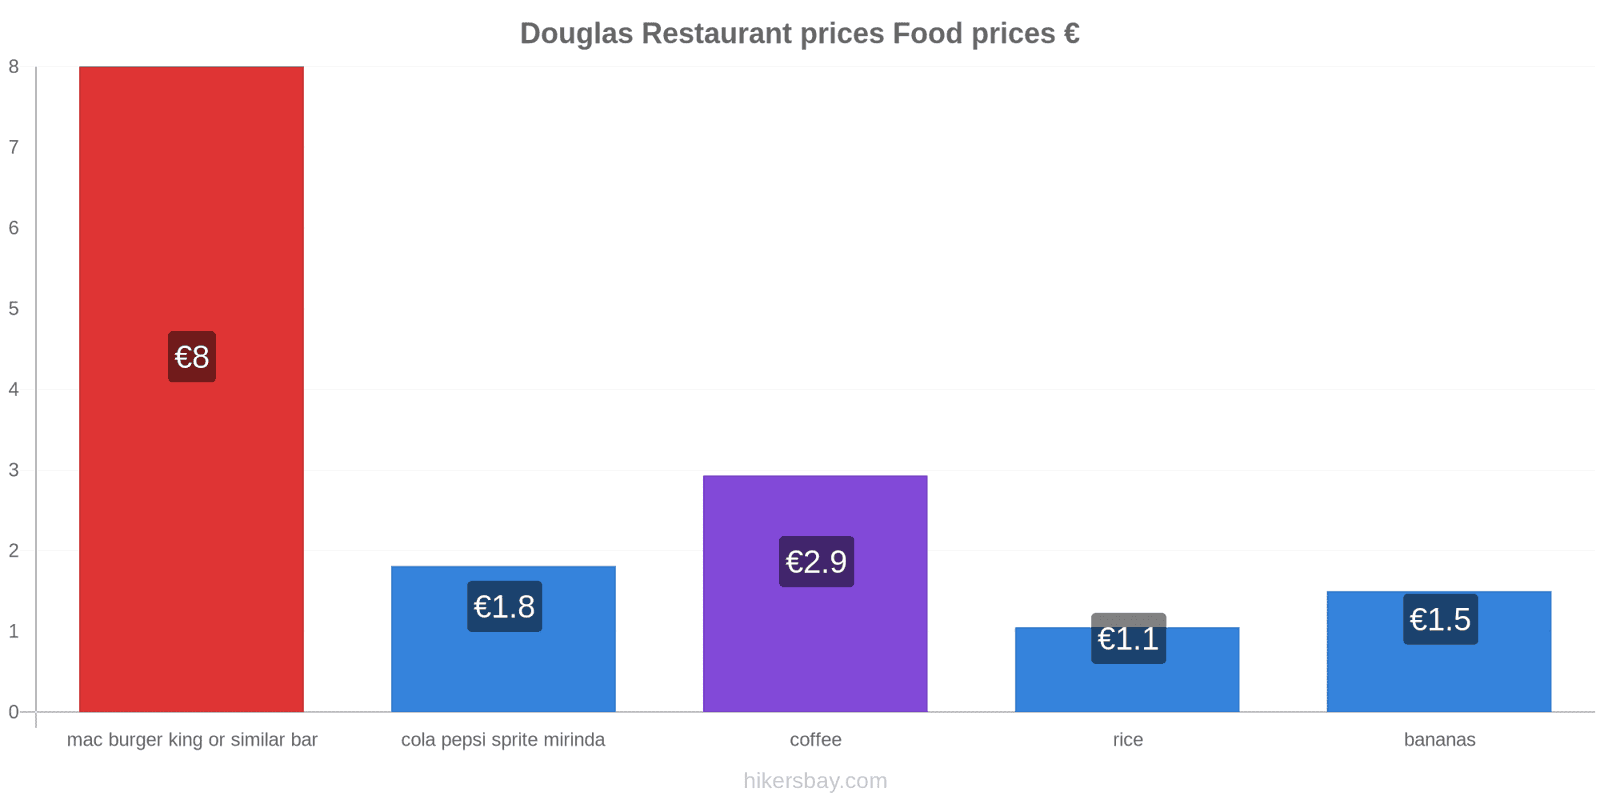 Douglas price changes hikersbay.com